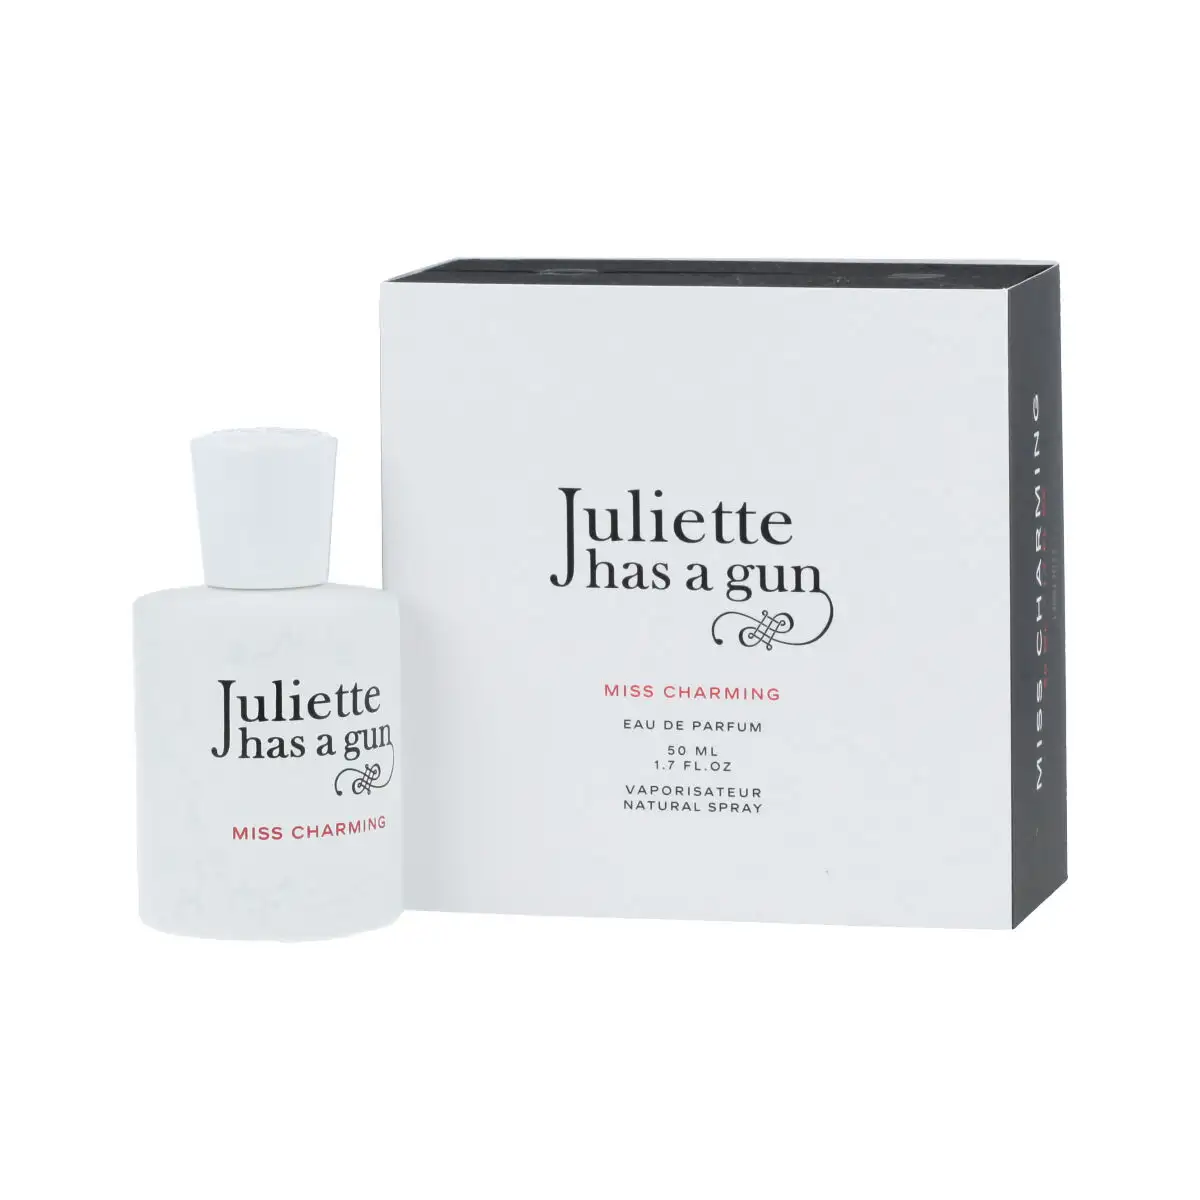 Parfum femme juliette has a gun edp miss charming 50 ml_4782. DIAYTAR SENEGAL - Là où le Shopping devient une Fête des Sens. Plongez dans notre univers et choisissez des produits qui éveillent votre goût pour l'esthétique et l'authenticité.